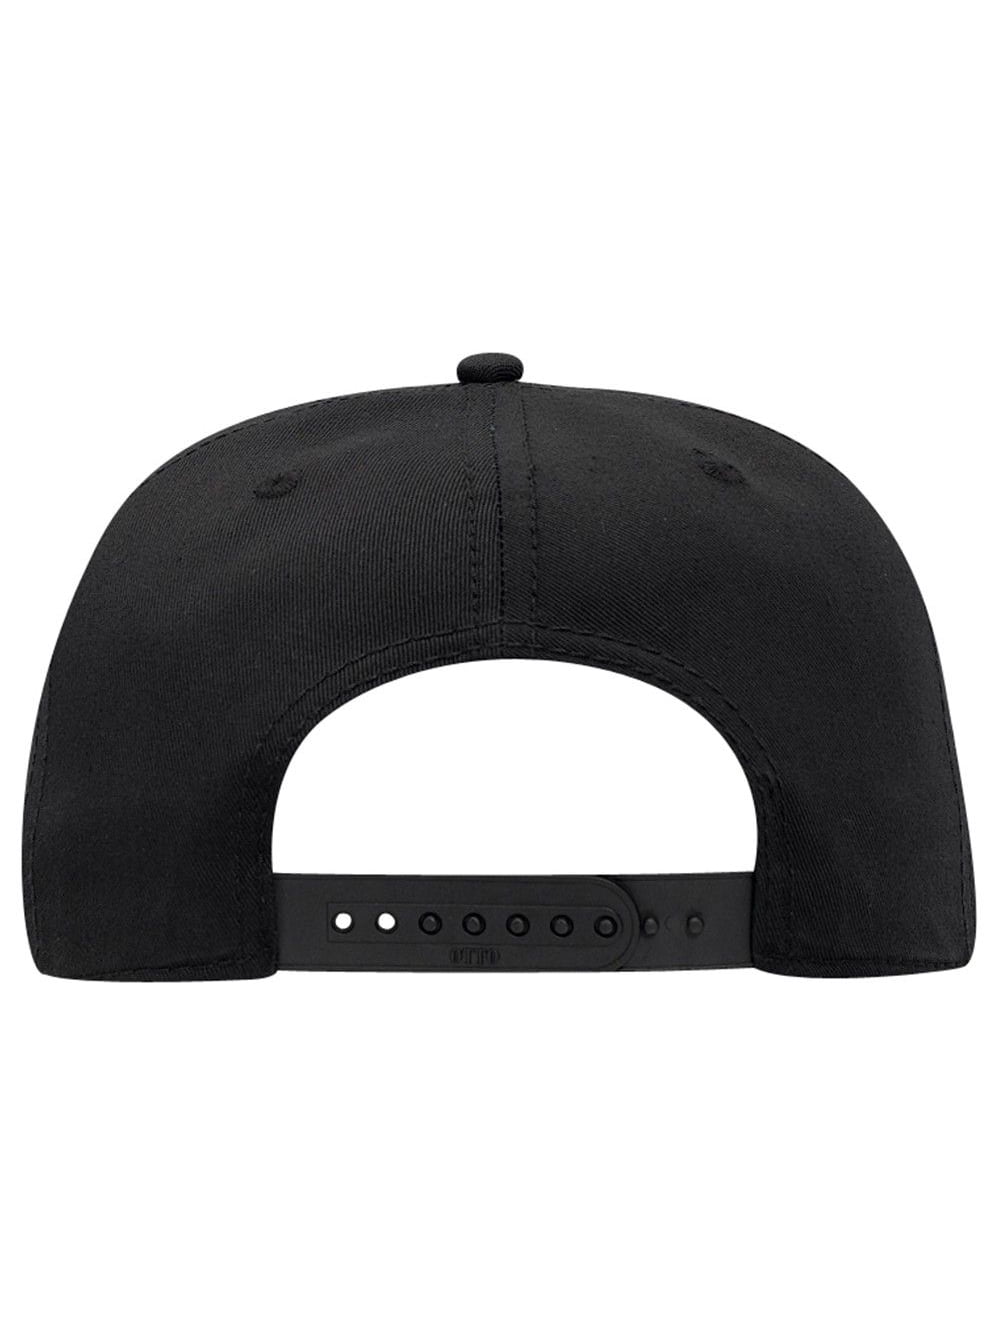 Cotton Twill Flat Bill 6 Panel Mid Profile Snapback Hat, Black 